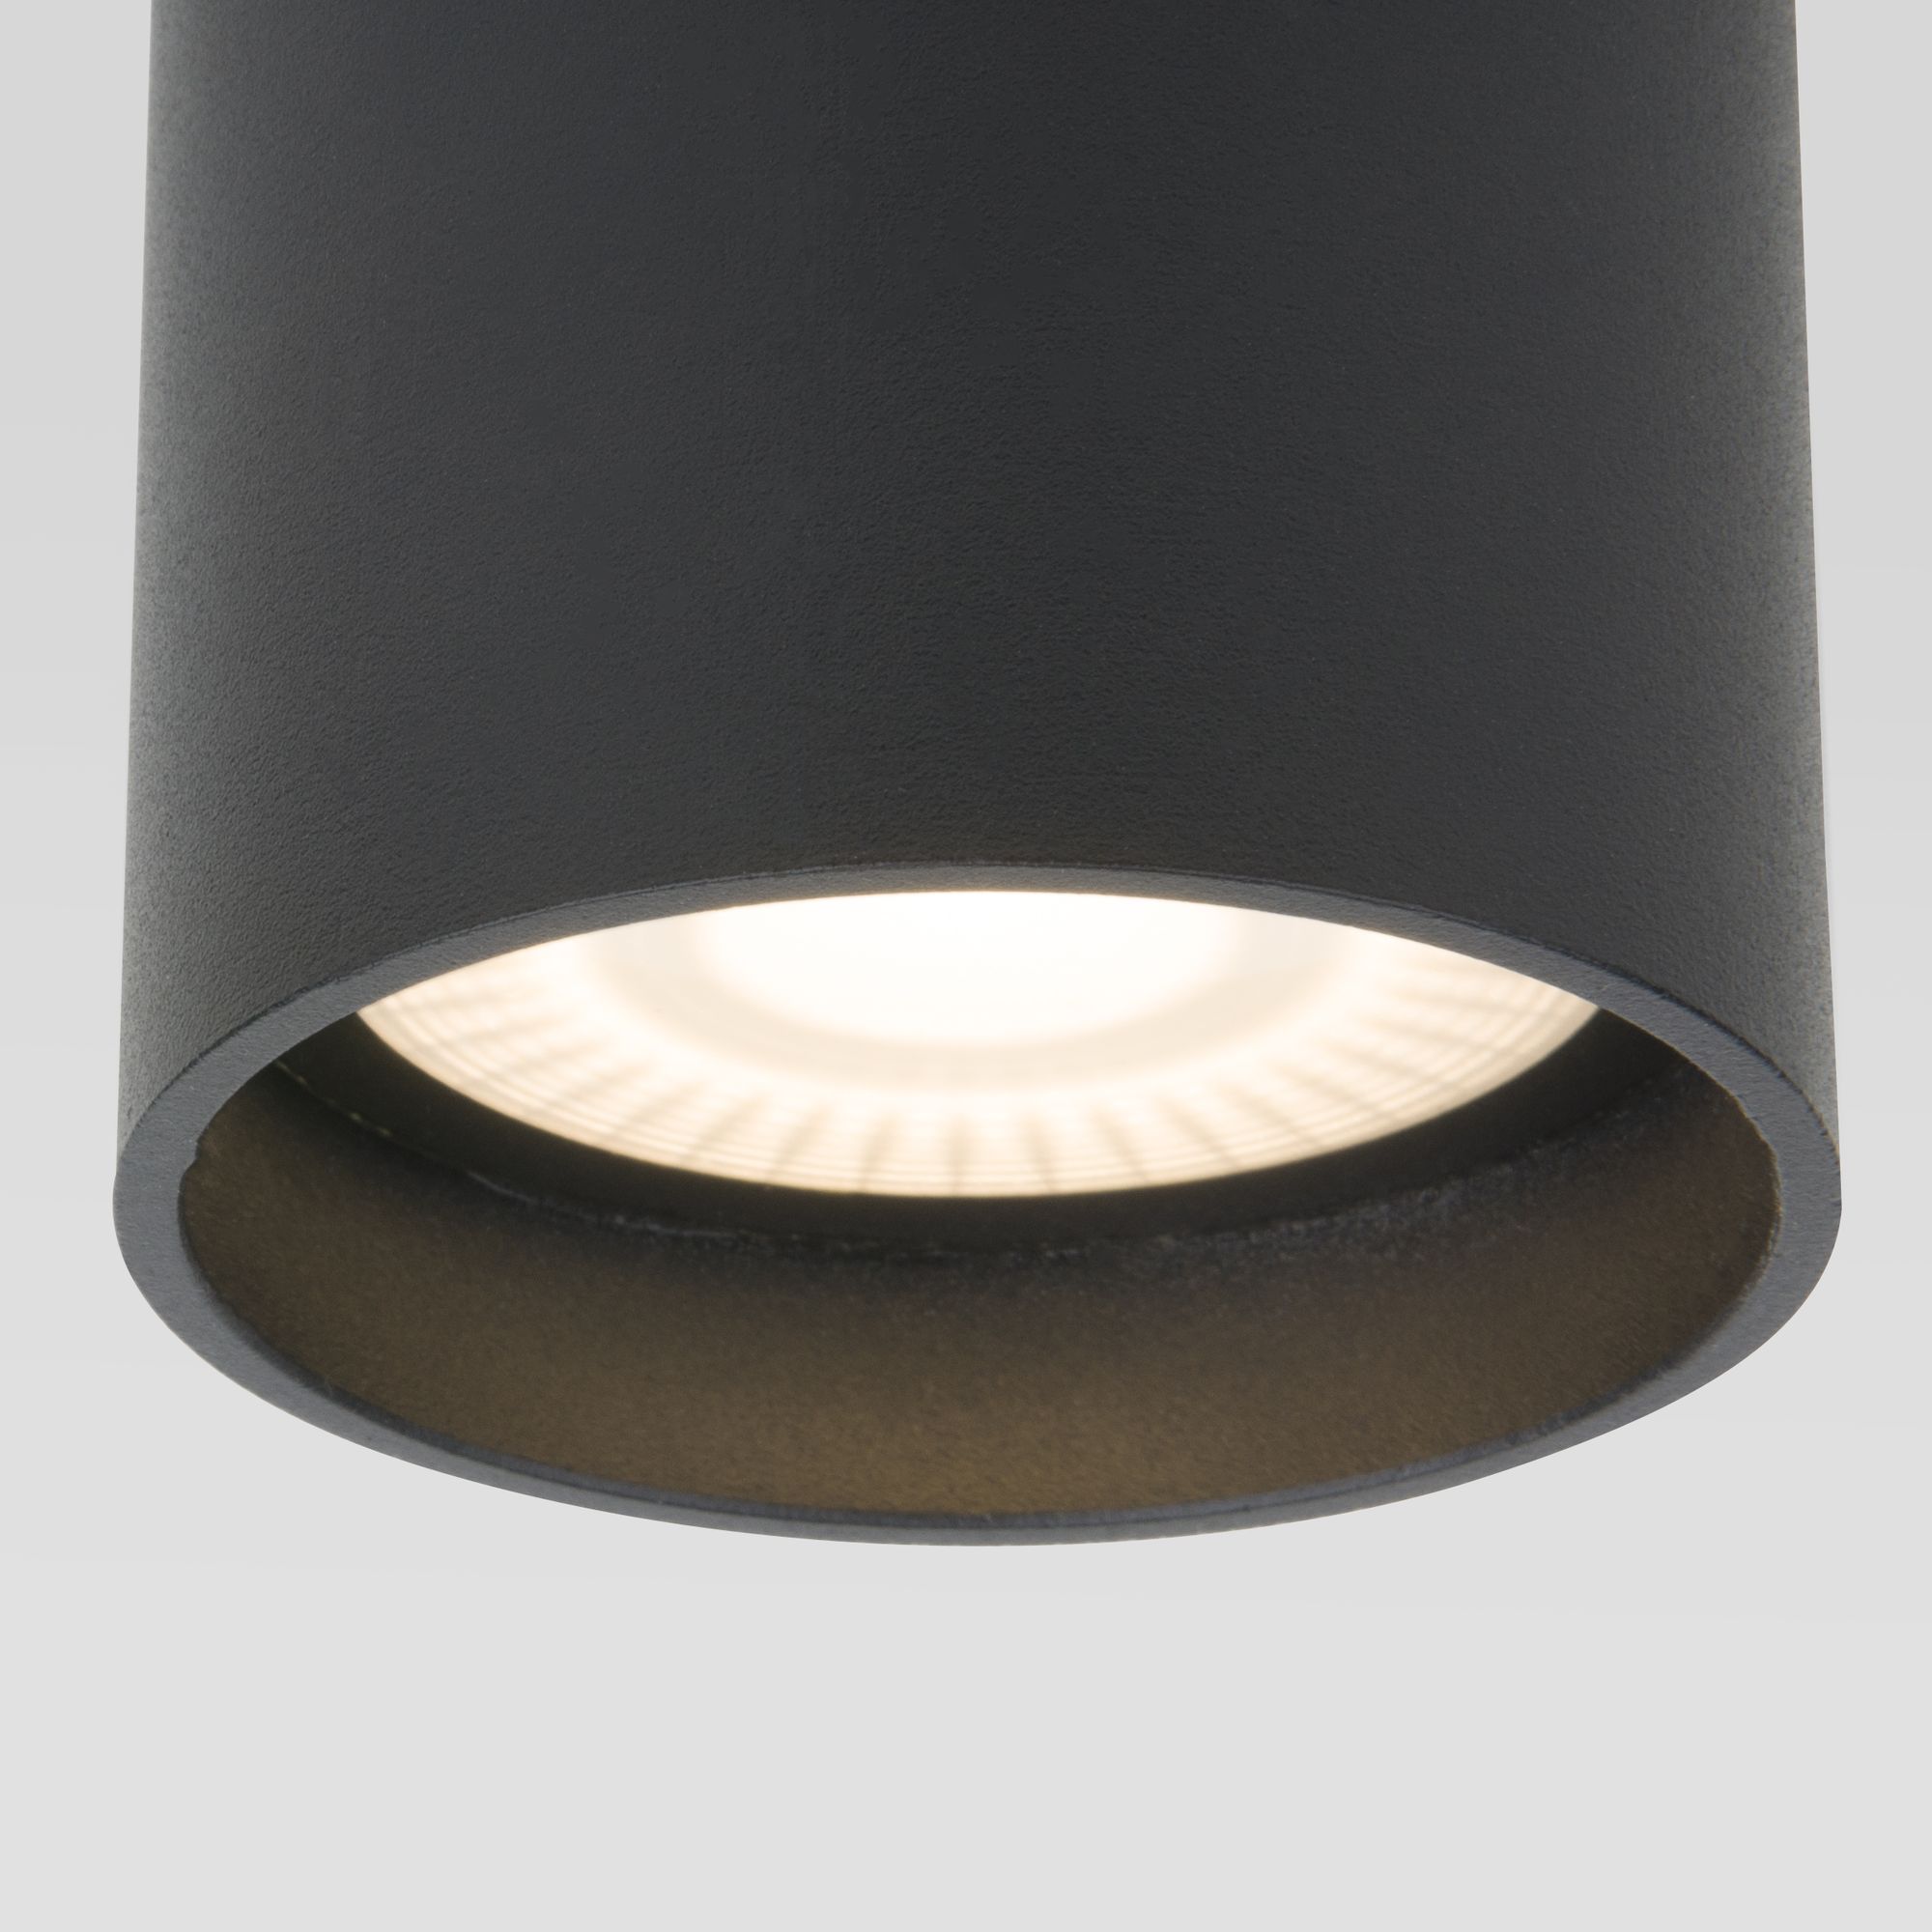 Уличный потолочный светильник Light LED 2104 IP54 35130/H черный